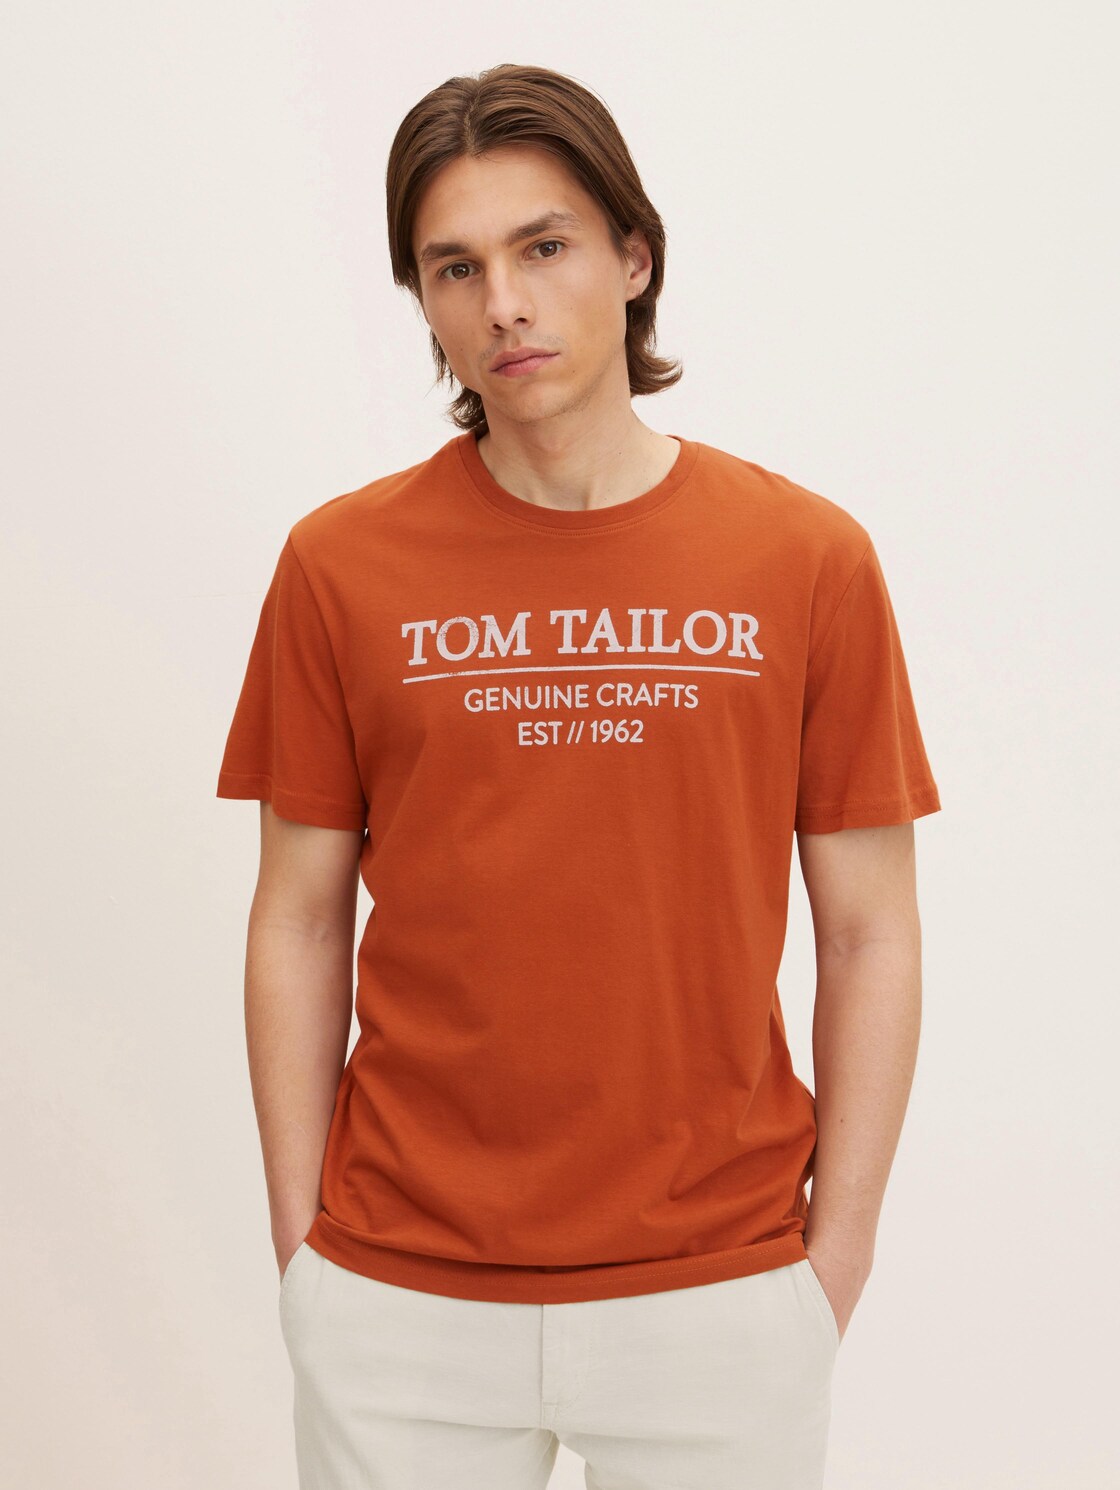 TOM TAILOR Herren T-Shirt mit Bio-Baumwolle, braun, Logo Print, Gr. XXL,